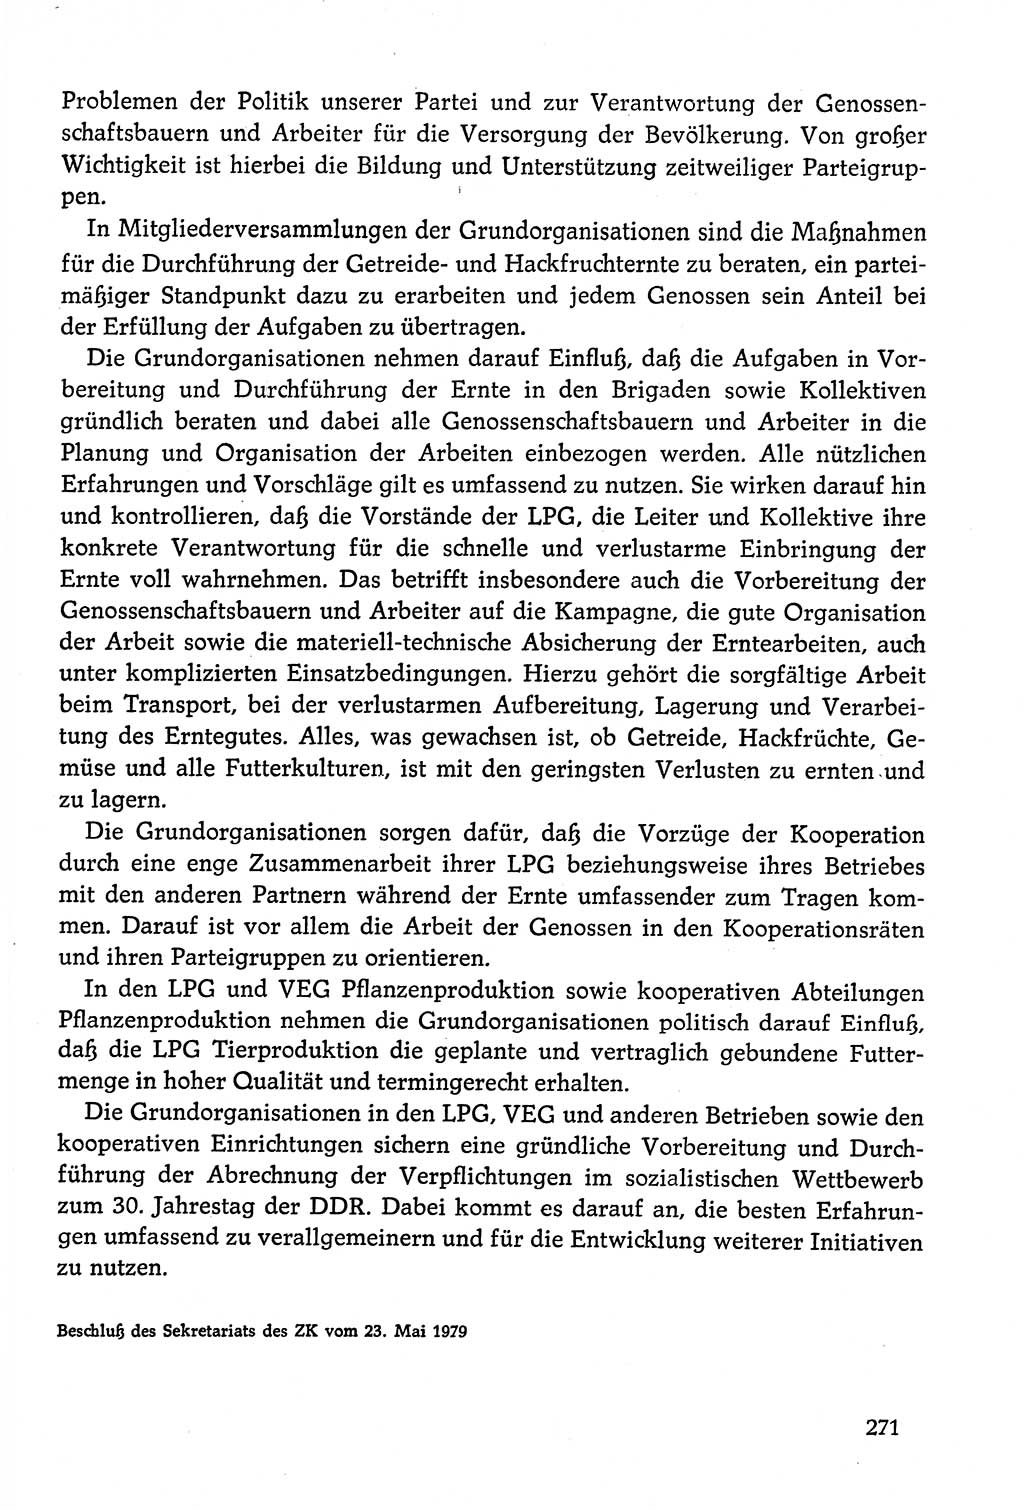 Dokumente der Sozialistischen Einheitspartei Deutschlands (SED) [Deutsche Demokratische Republik (DDR)] 1978-1979, Seite 271 (Dok. SED DDR 1978-1979, S. 271)